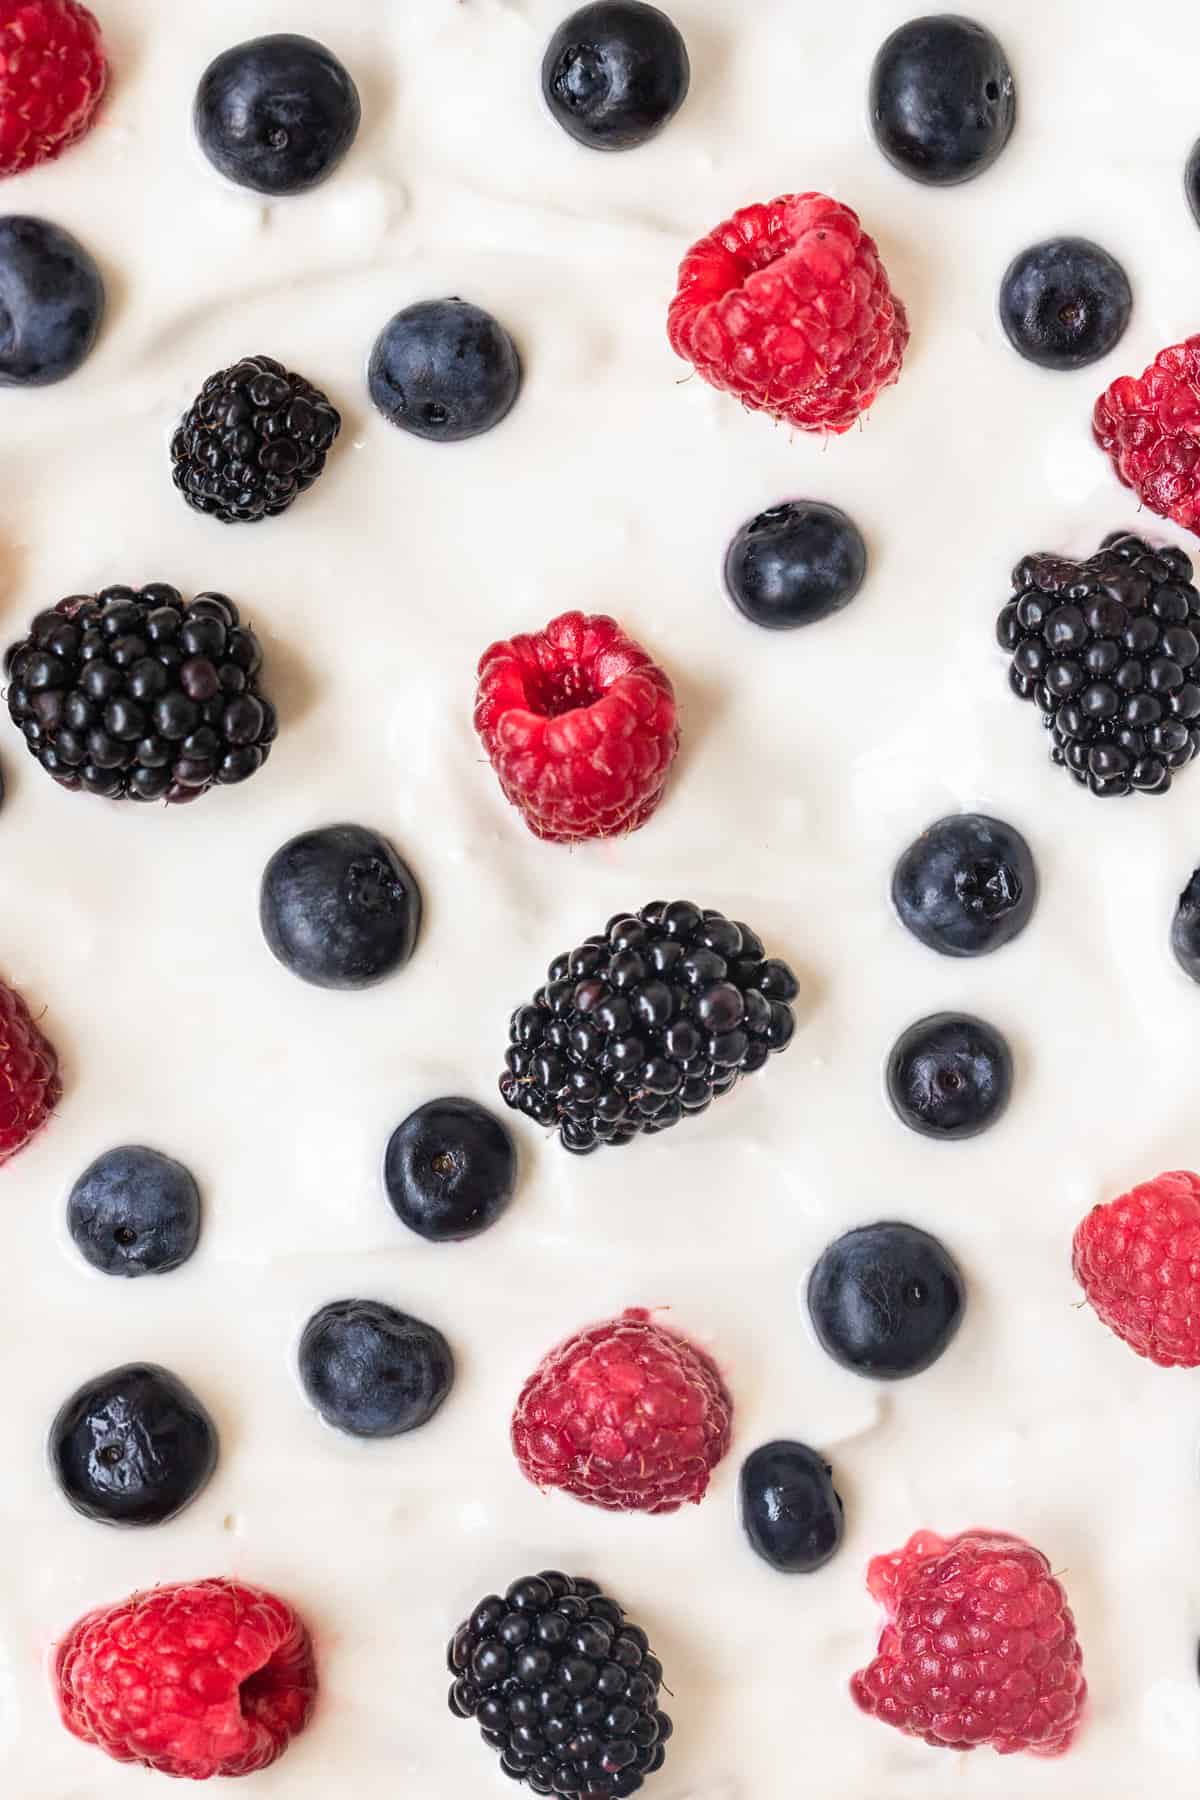 Close up of blueberries, raspberries, and blackberries on top of yogurt.